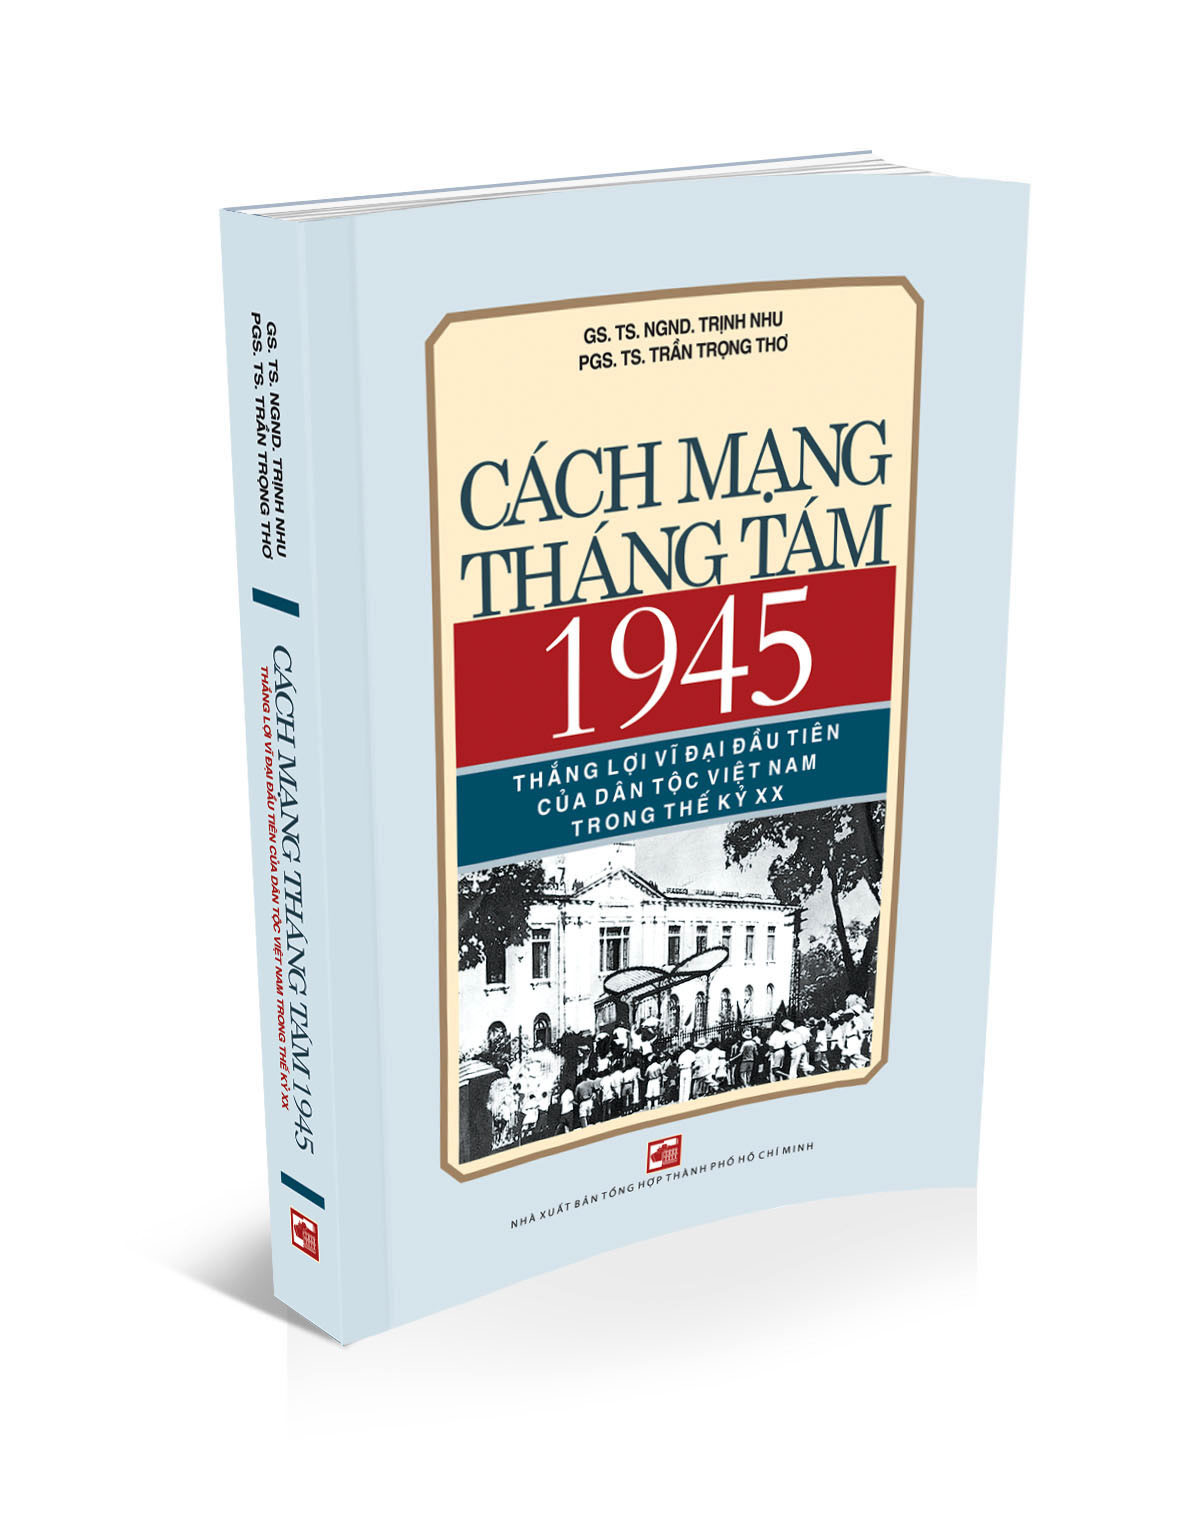  Ra mắt sách: Cách mạng tháng Tám 1945 – thắng lợi vĩ đại đầu tiên của dân tộc Việt Nam trong thế kỷ XX